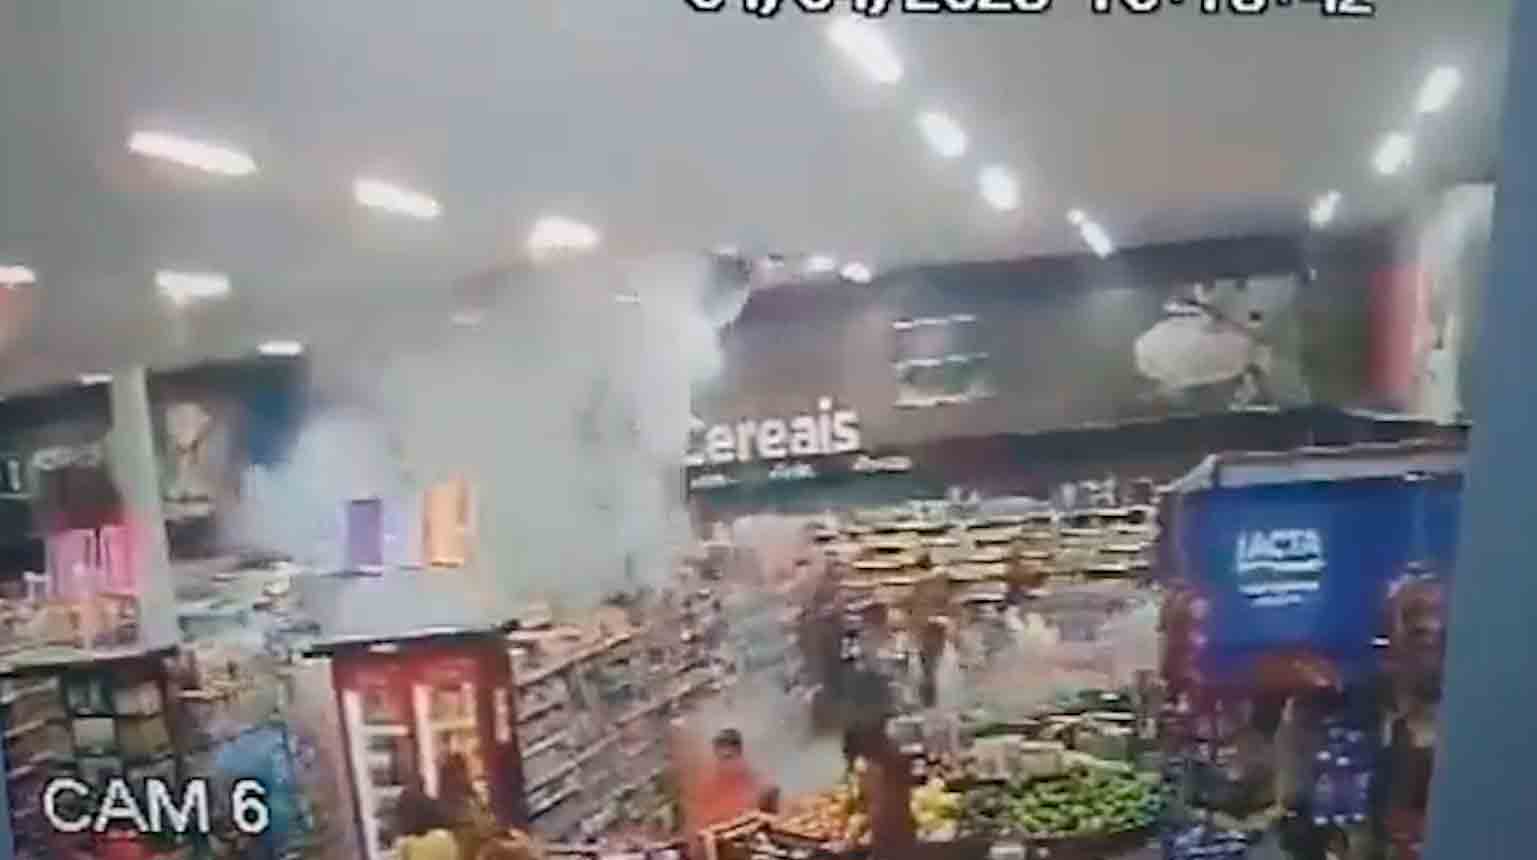 Vídeo: Explosão criminosa em supermercado deixa 3 pessoas feridas no MT